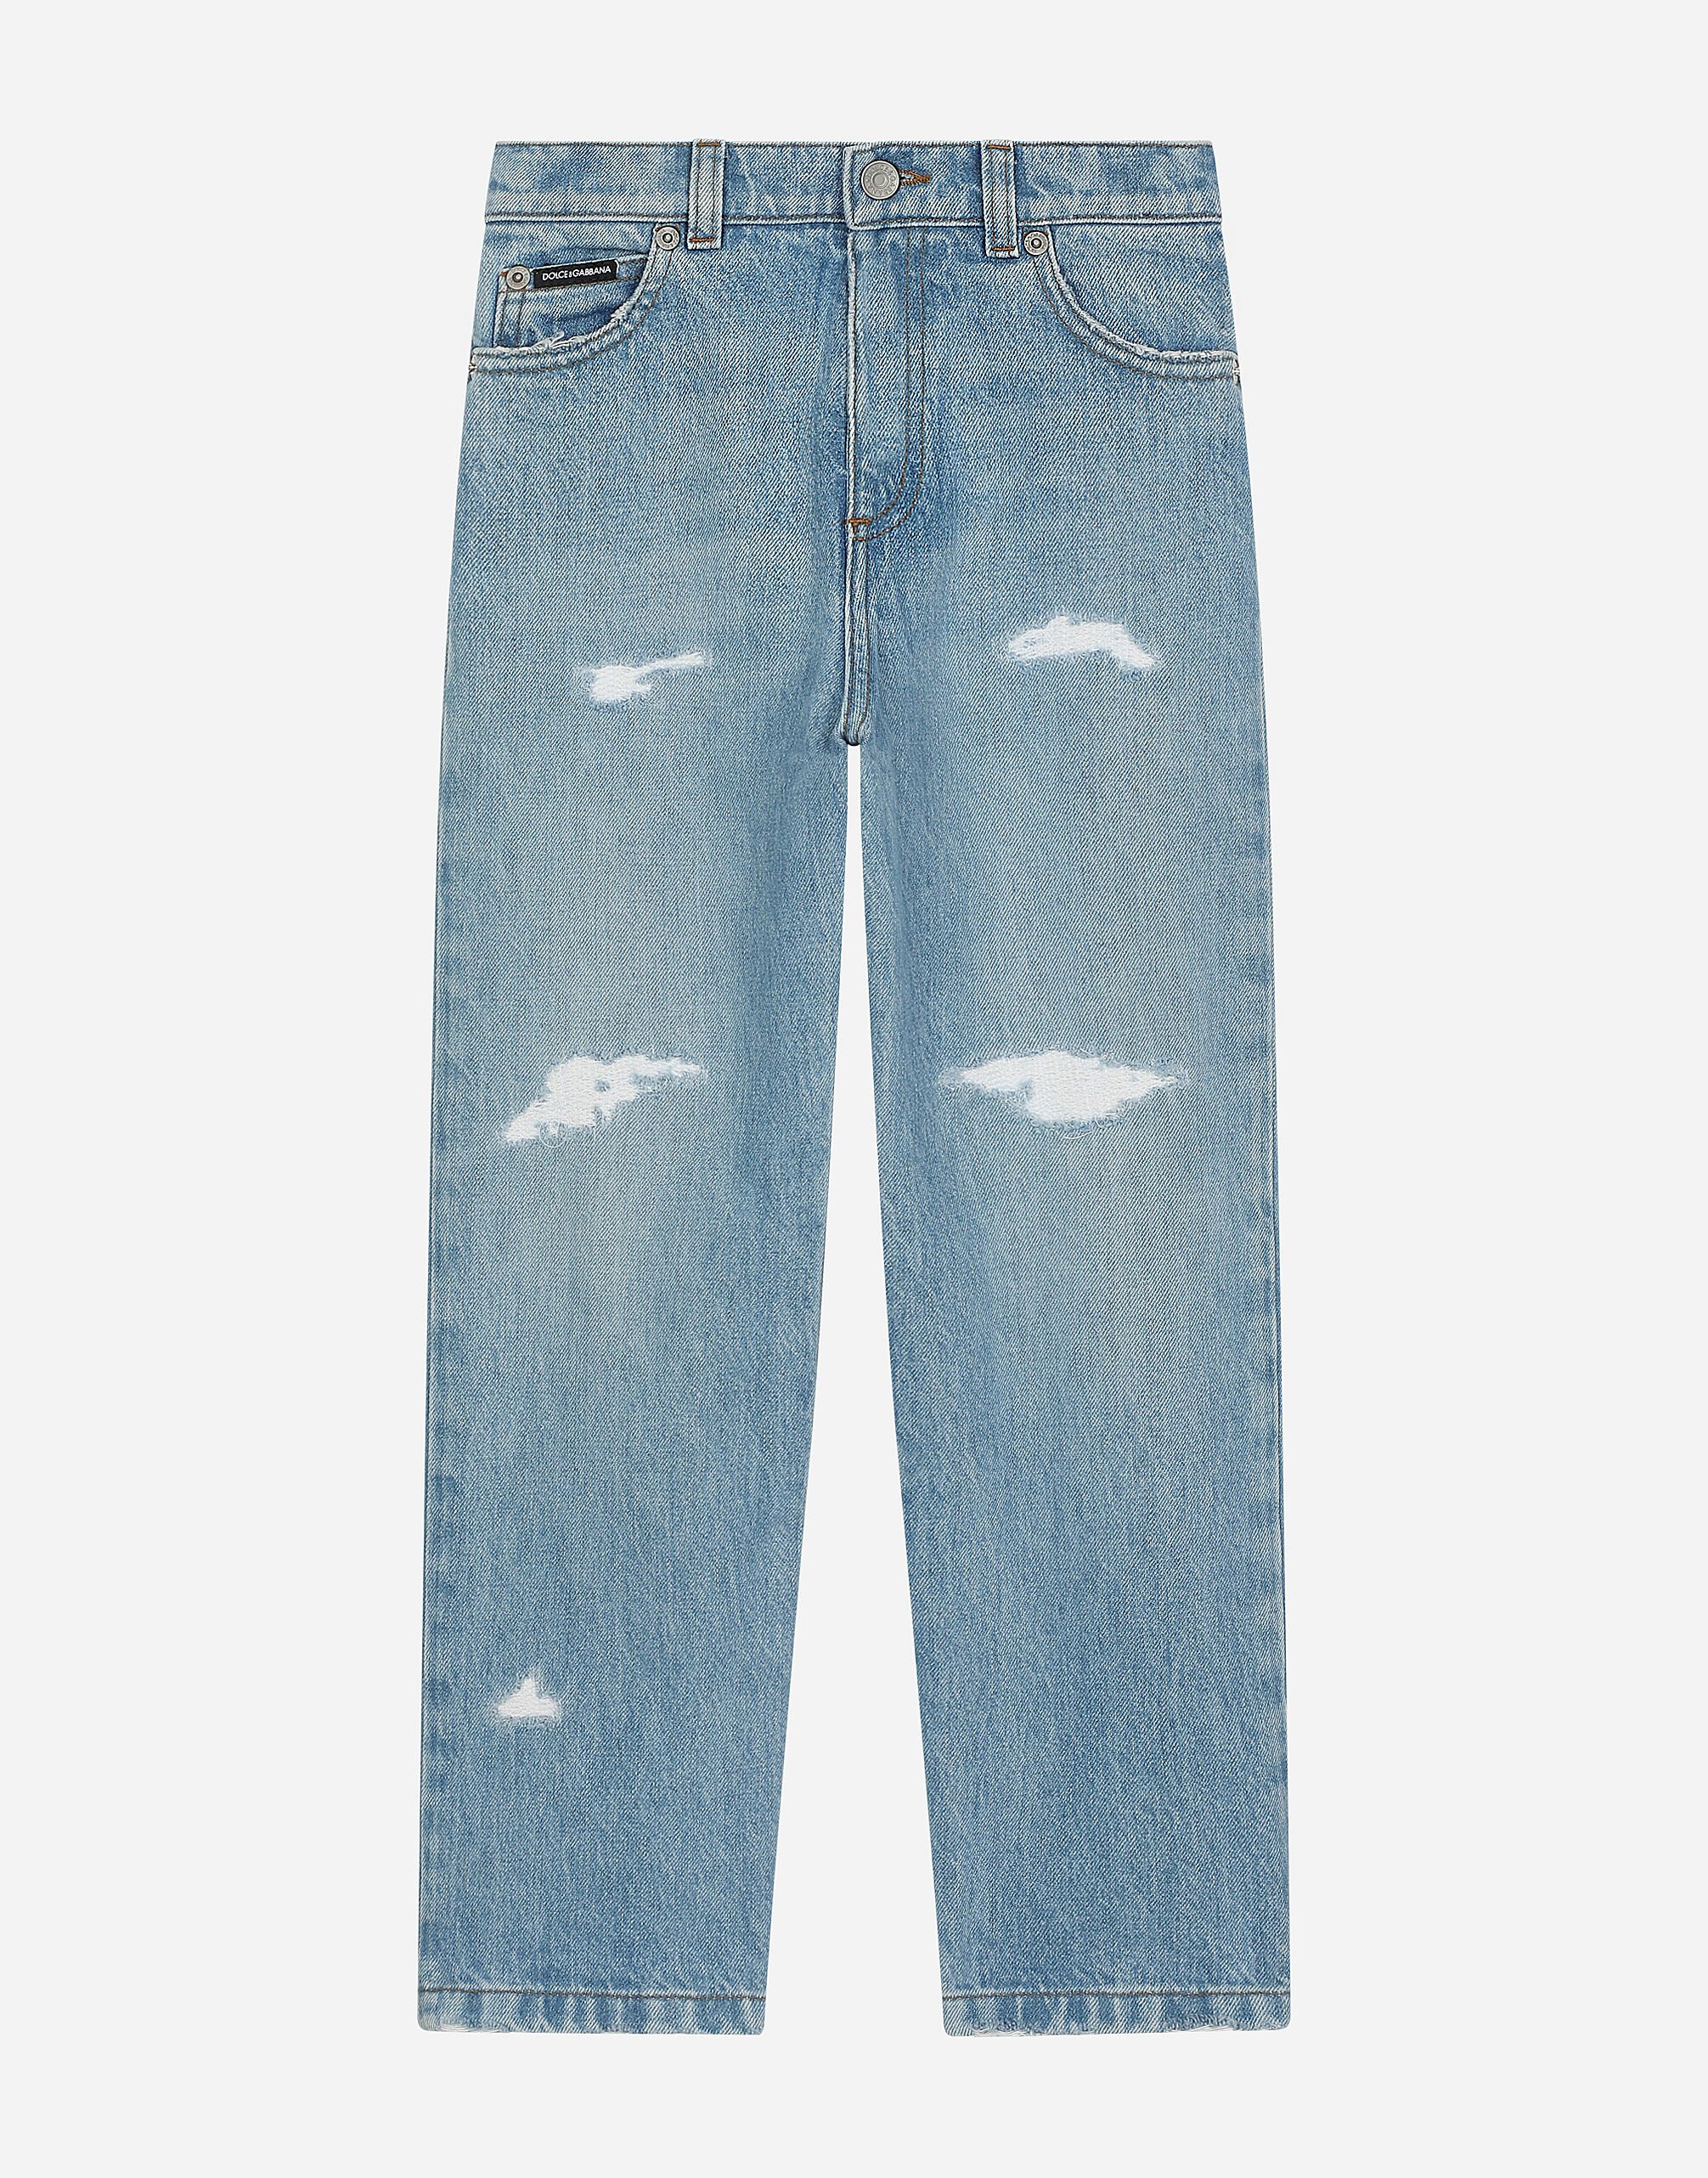 Dolce & Gabbana Jeans 5 tasche in denim con placca logata Stampa L43S81FS8C5